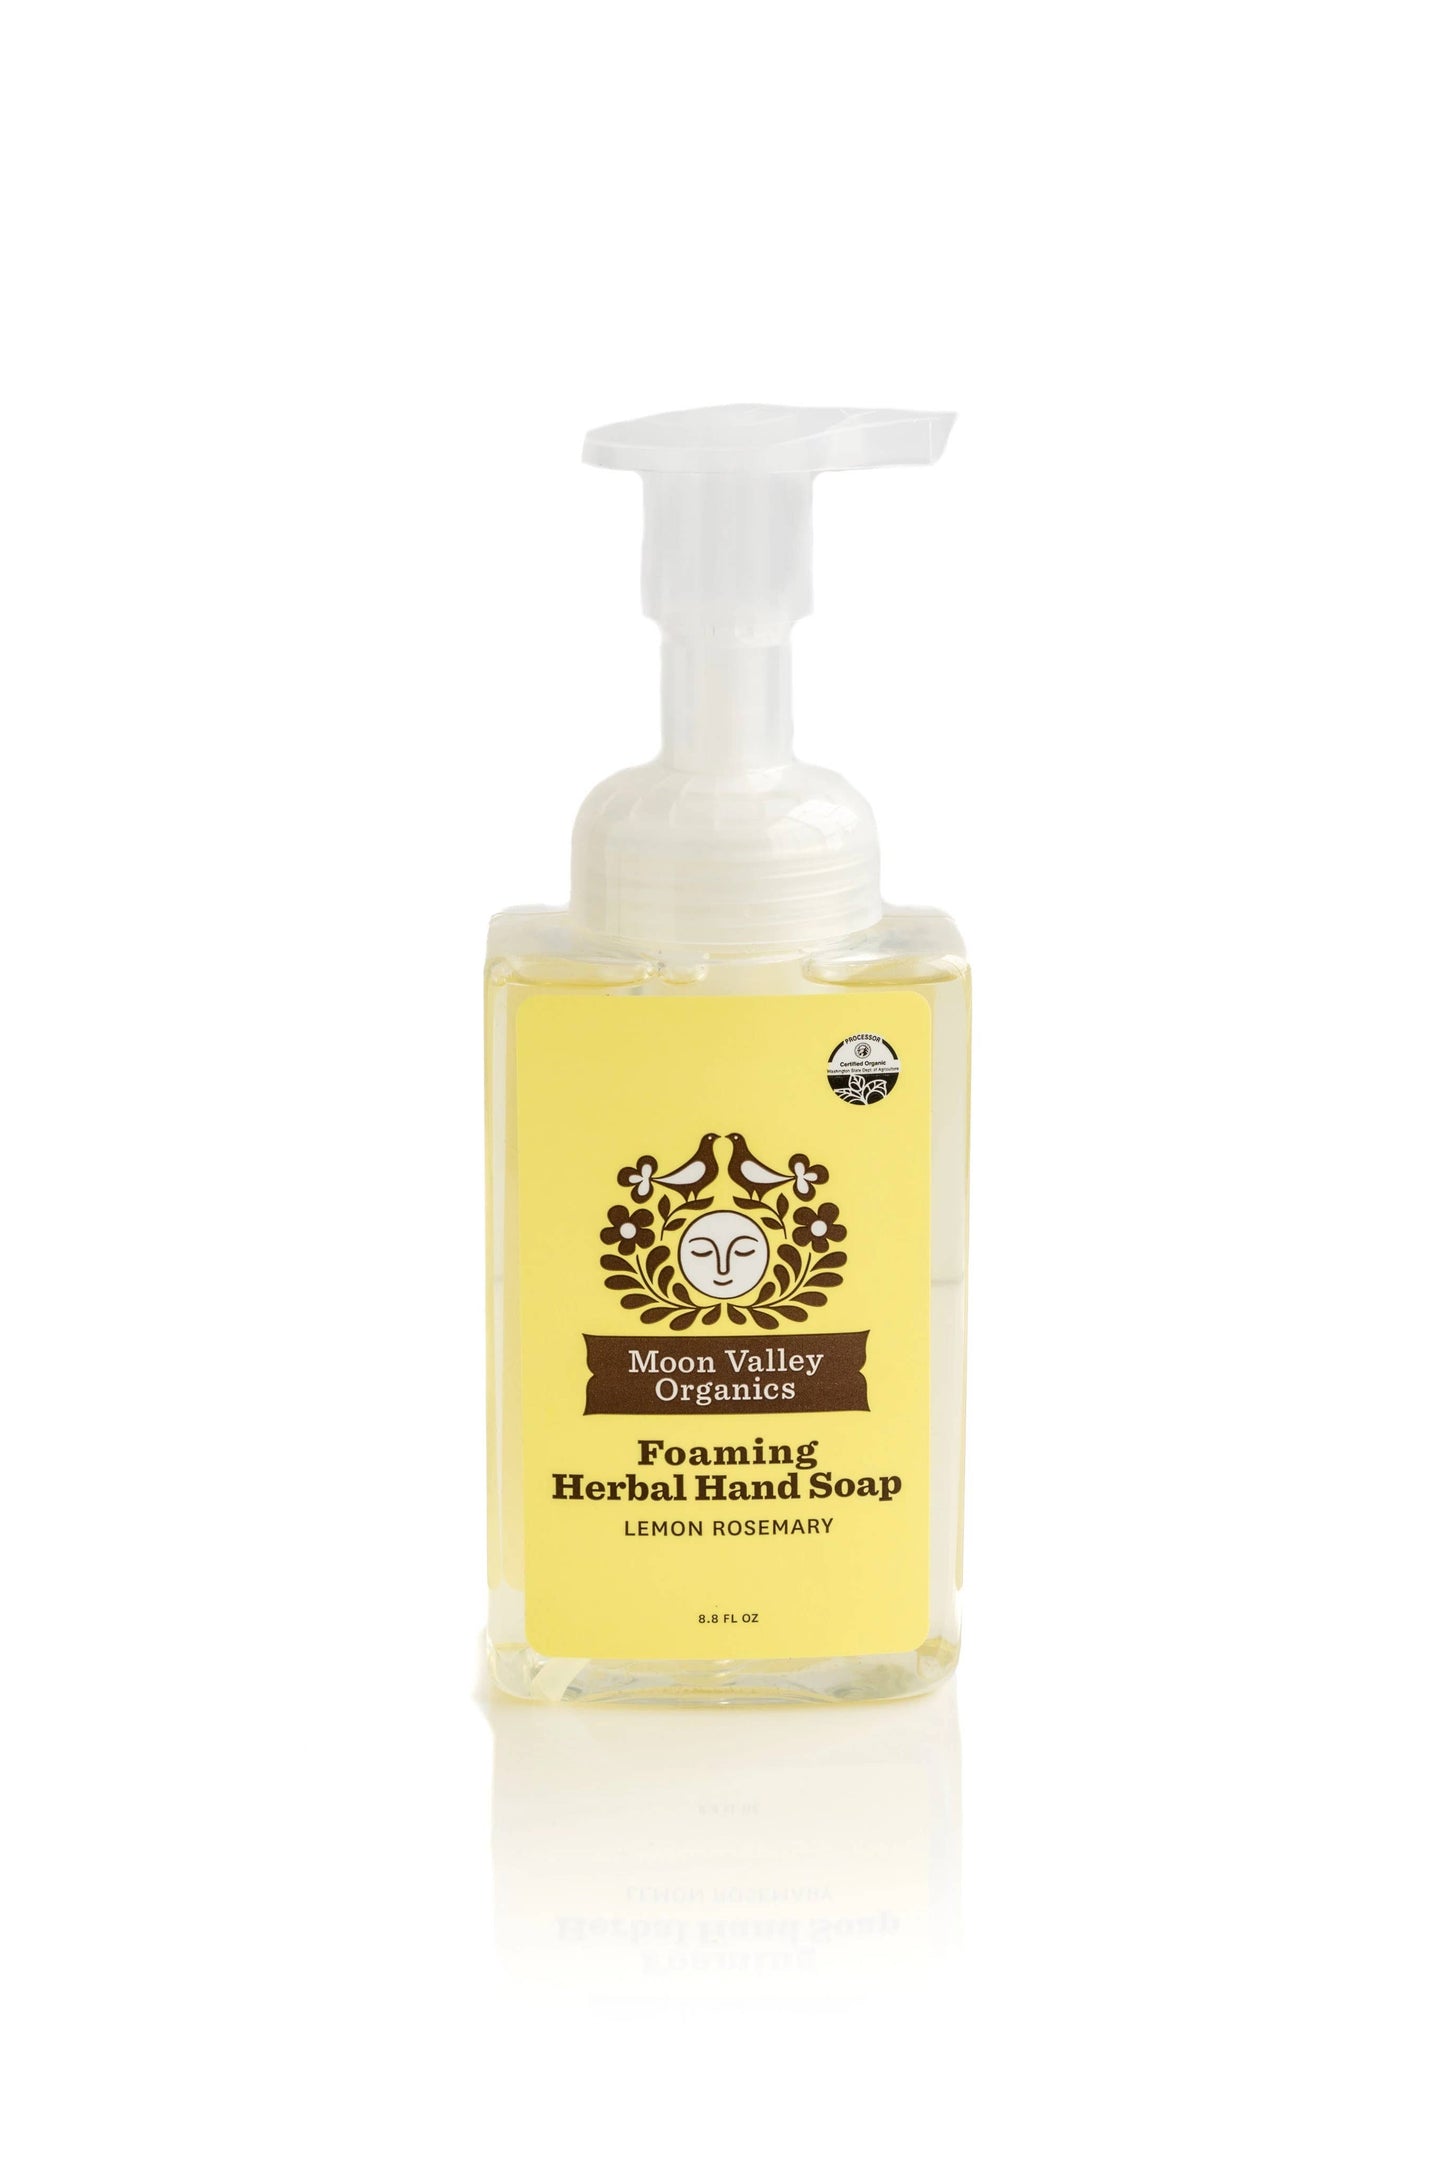 Lemon Rosemary Foaming Herbal Hand Soap